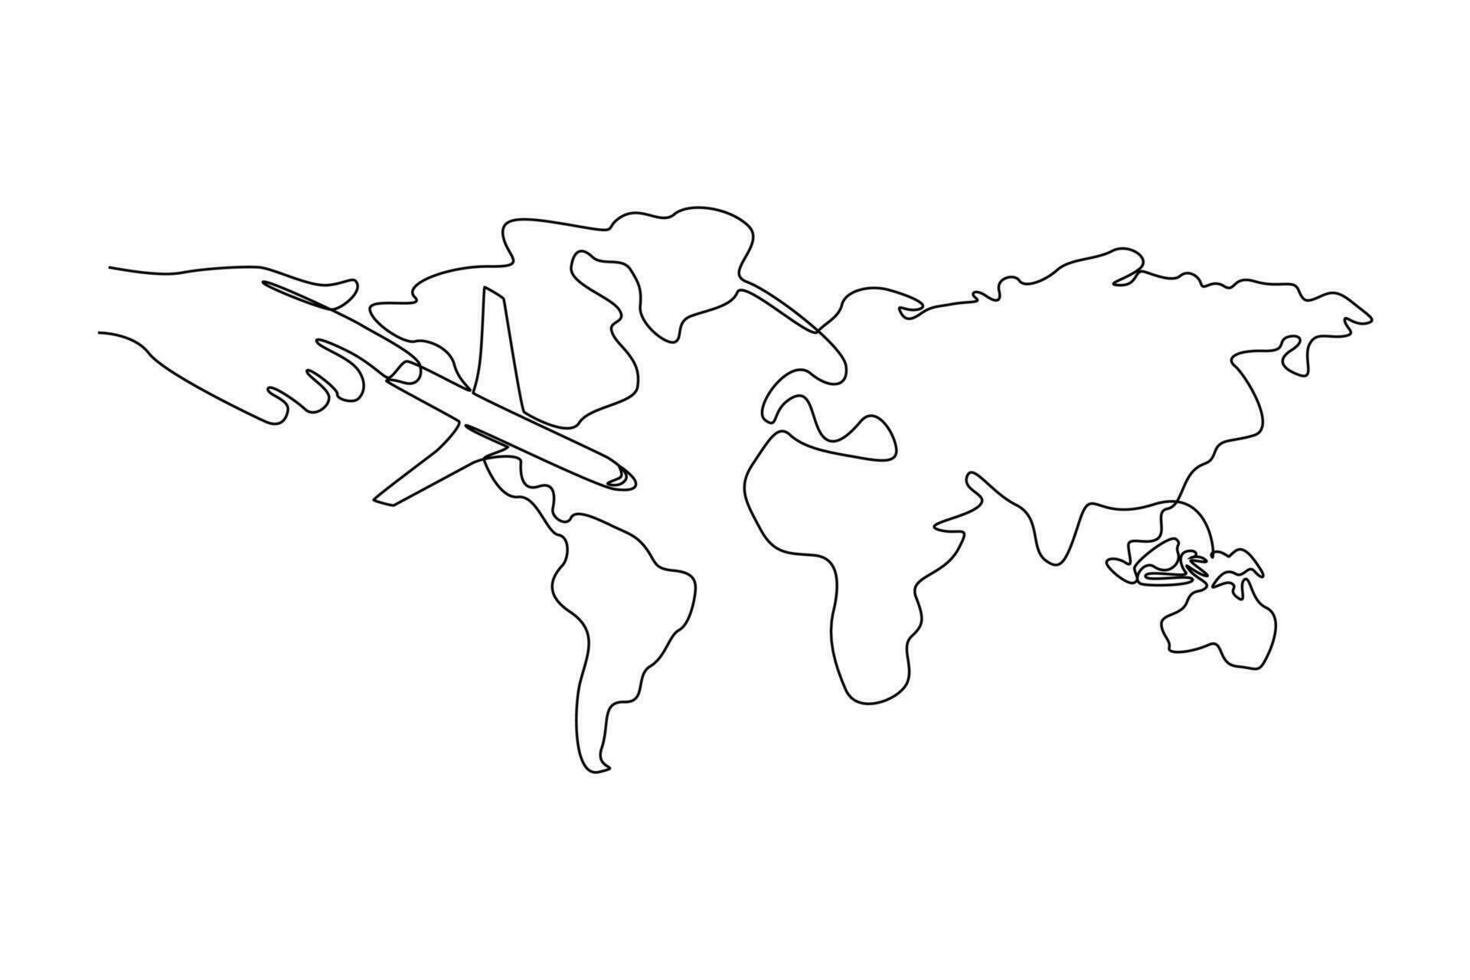 Single einer Linie Zeichnung Welt Tourismus Tag Konzept. kontinuierlich Linie zeichnen Design Grafik Vektor Illustration.